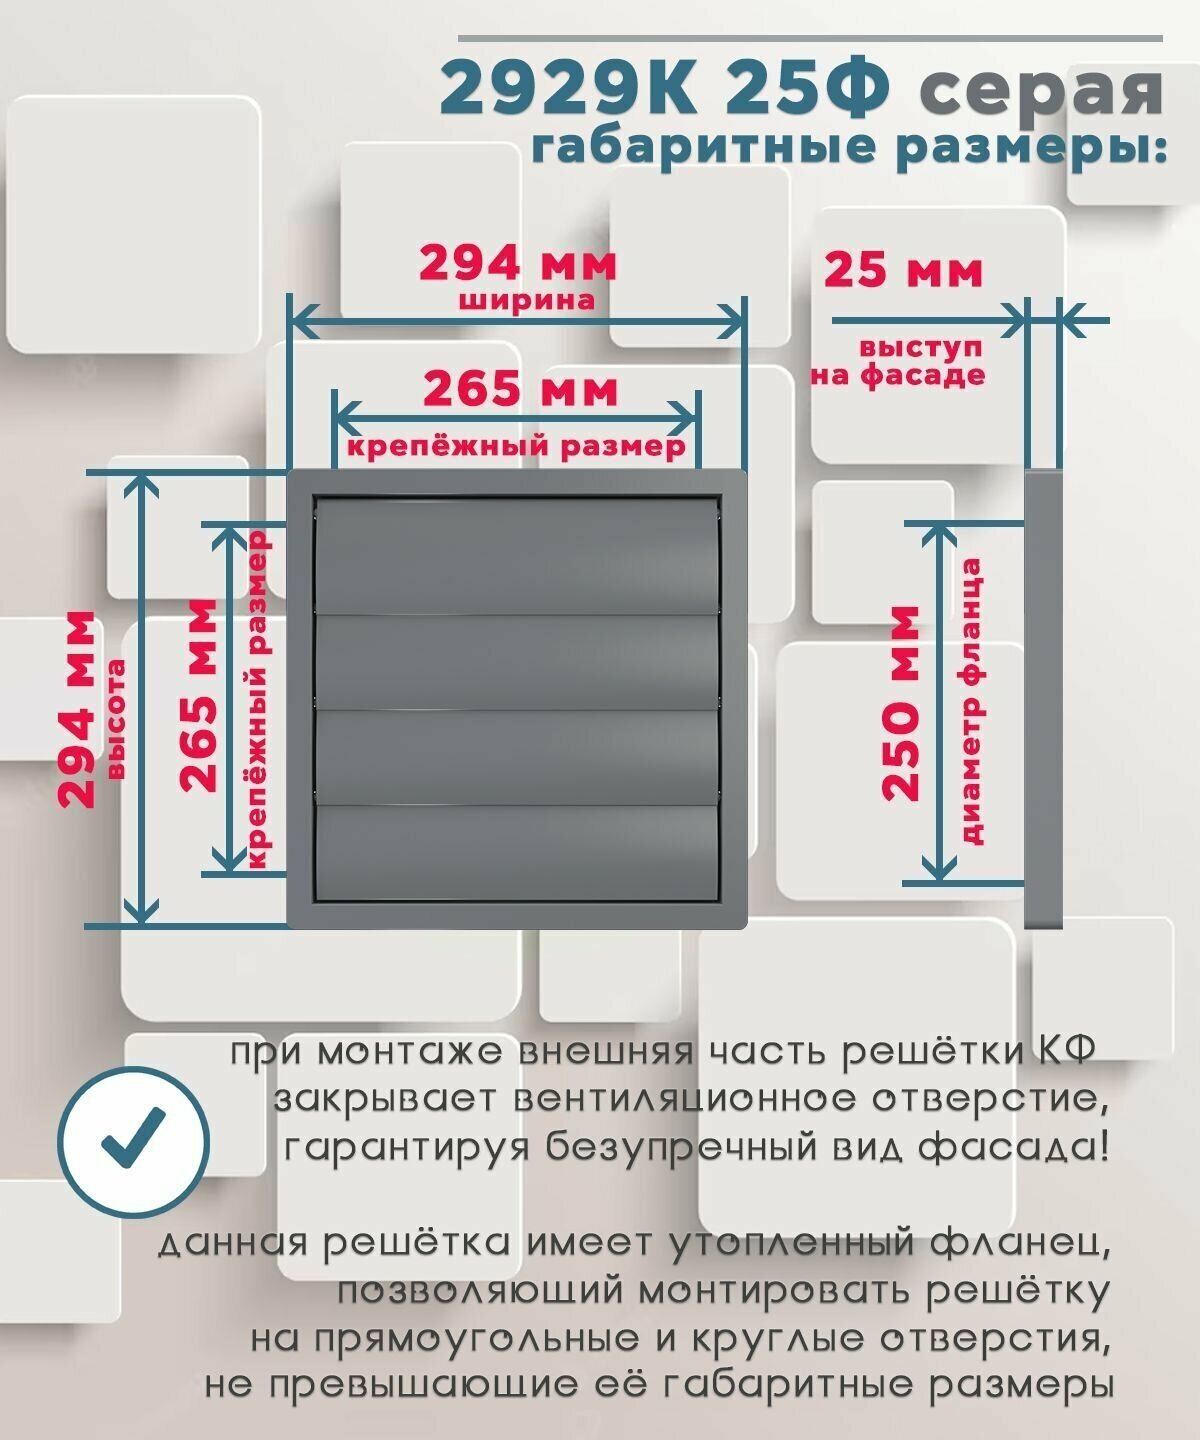 Вентиляционная решетка ERA Street line 2929К25Ф 294 x 294 мм серый